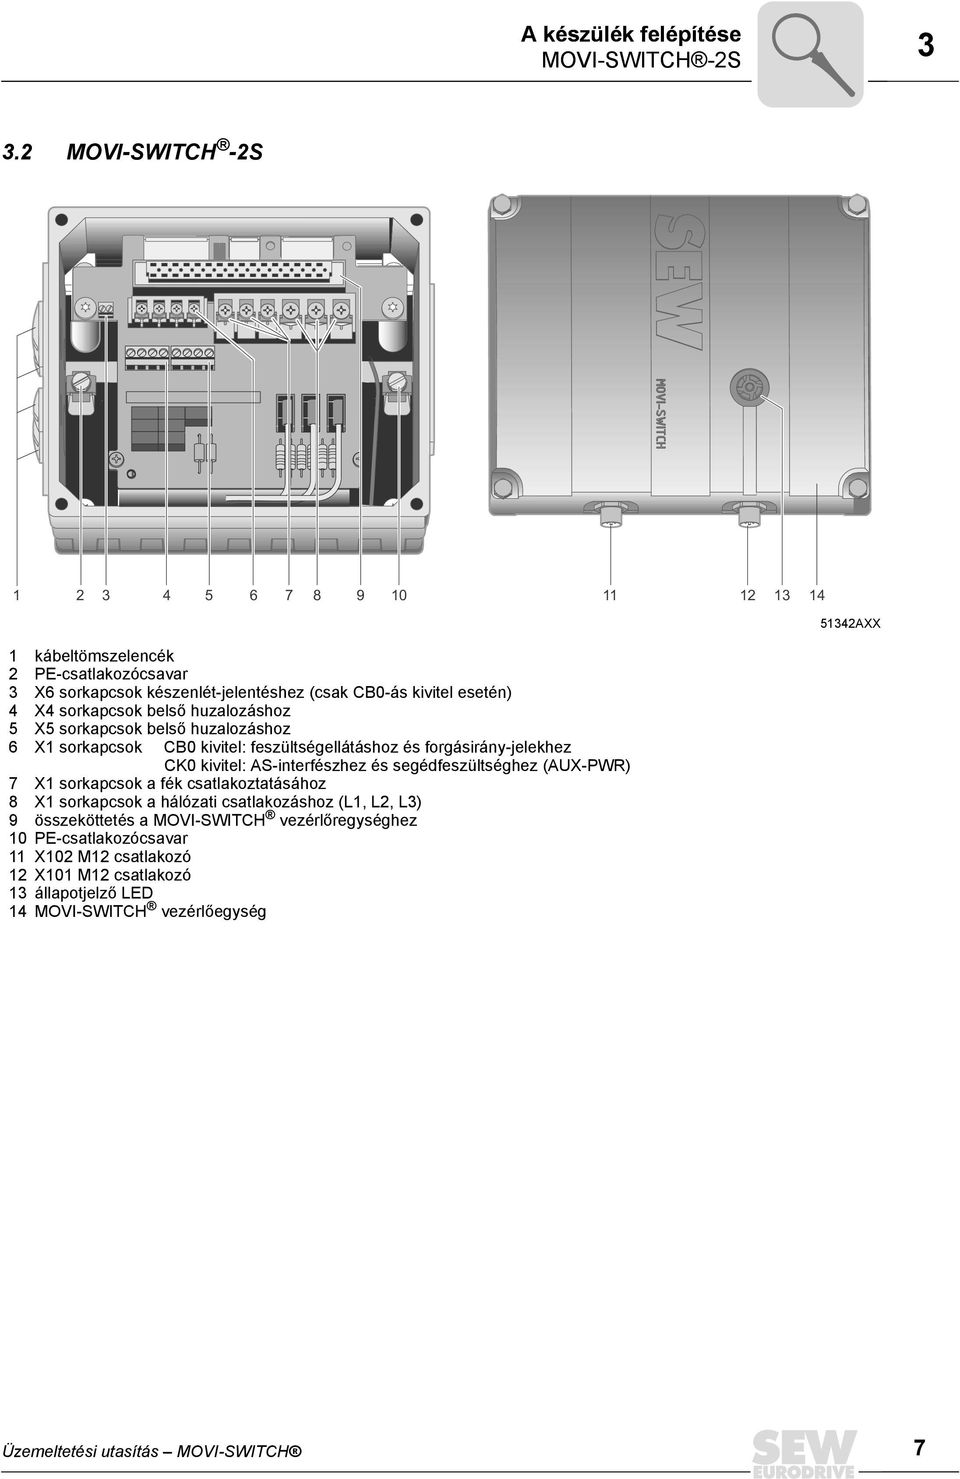 belső huzalozáshoz 5 X5 sorkapcsok belső huzalozáshoz 6 X1 sorkapcsok CB0 kivitel: feszültségellátáshoz és forgásirány-jelekhez CK0 kivitel: AS-interfészhez és segédfeszültséghez